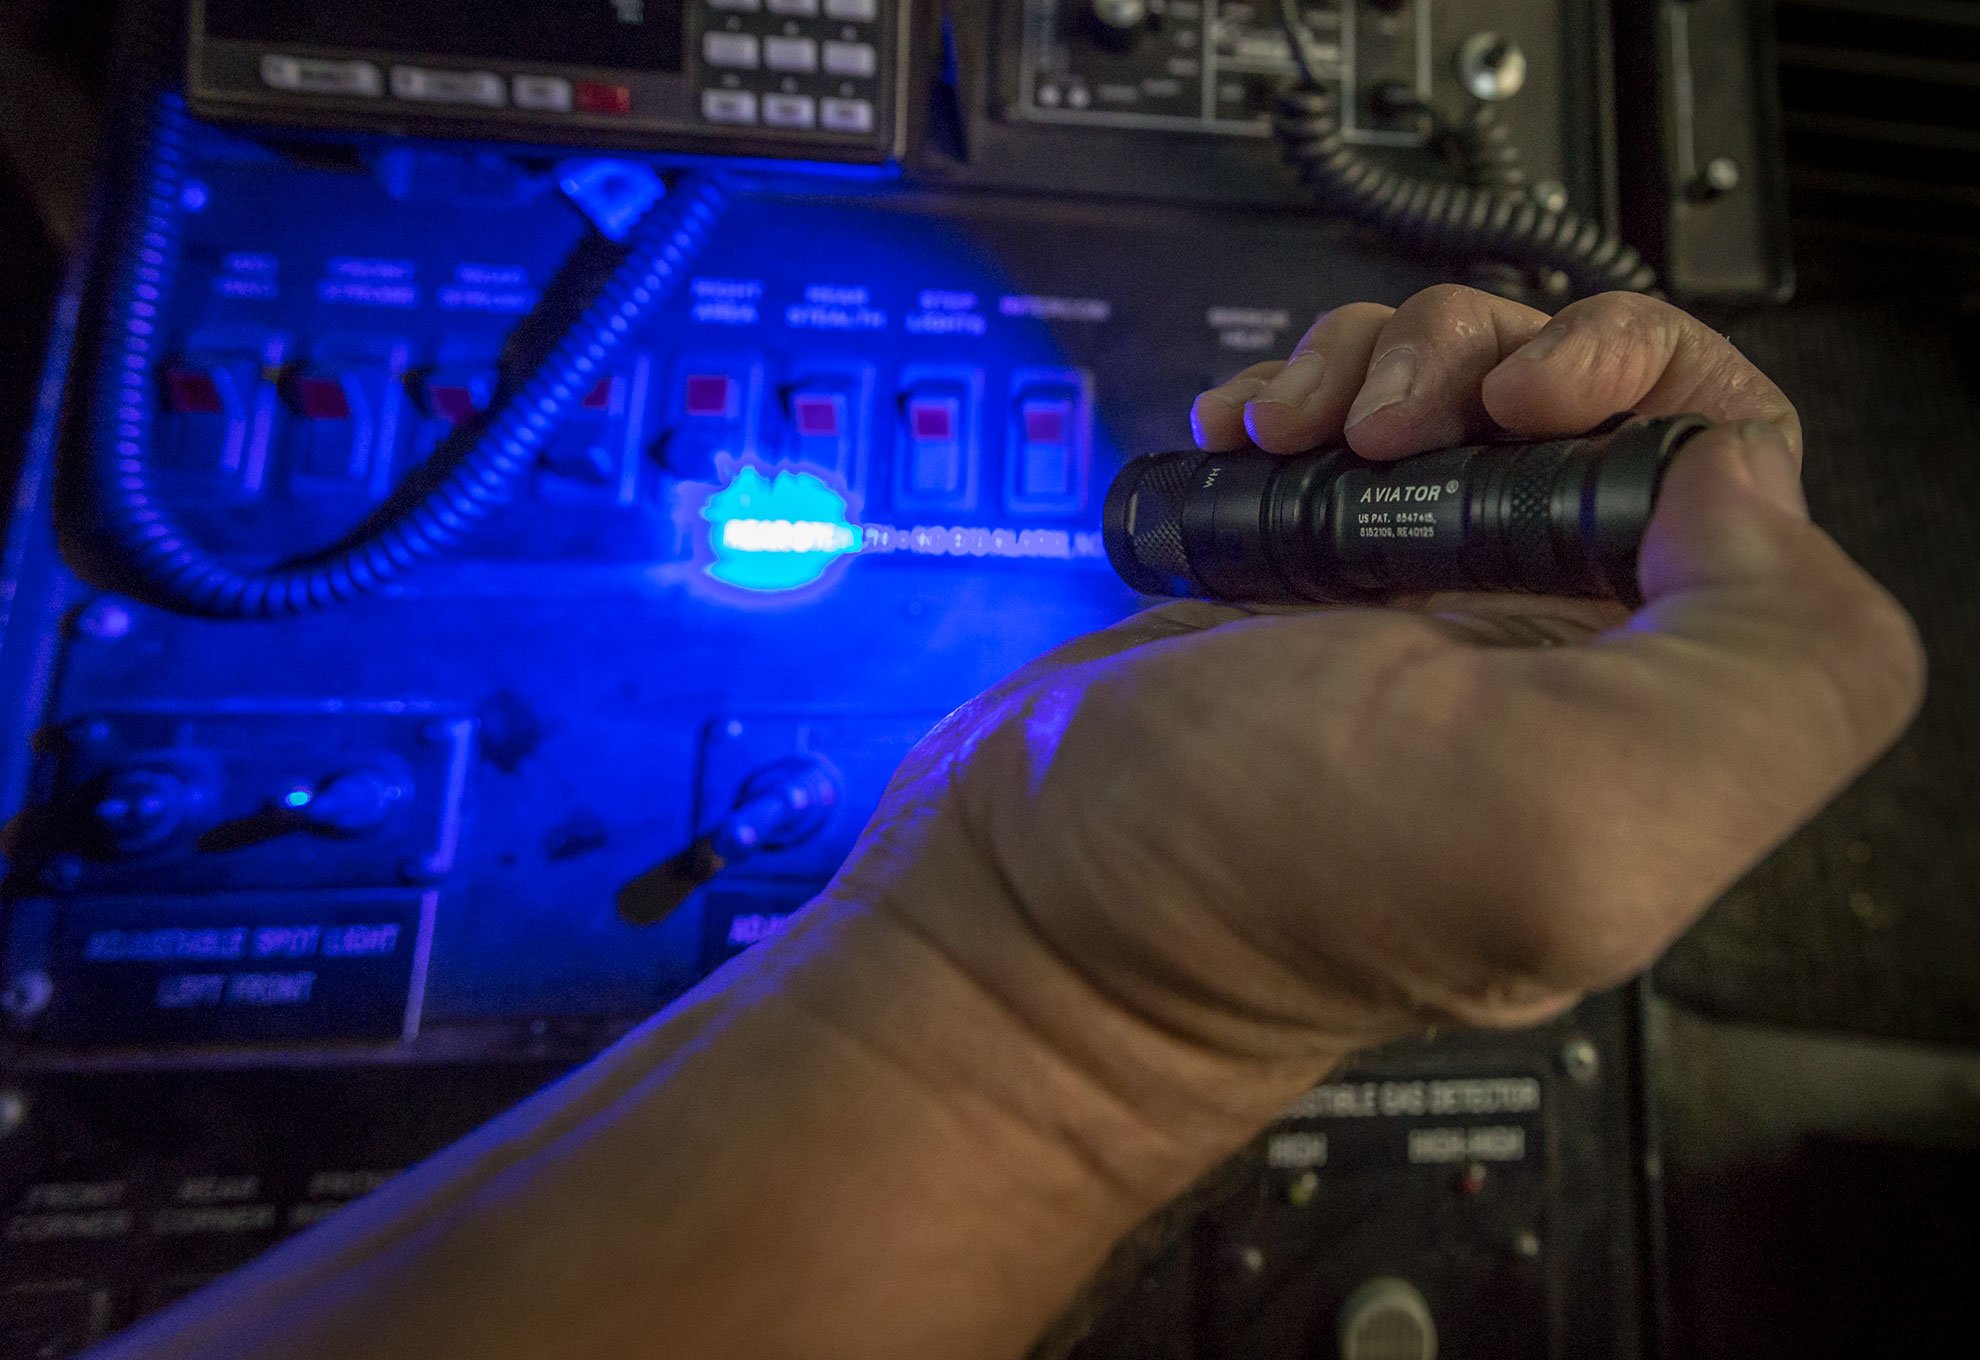 SureFire Aviator flashlight blue light instrument read